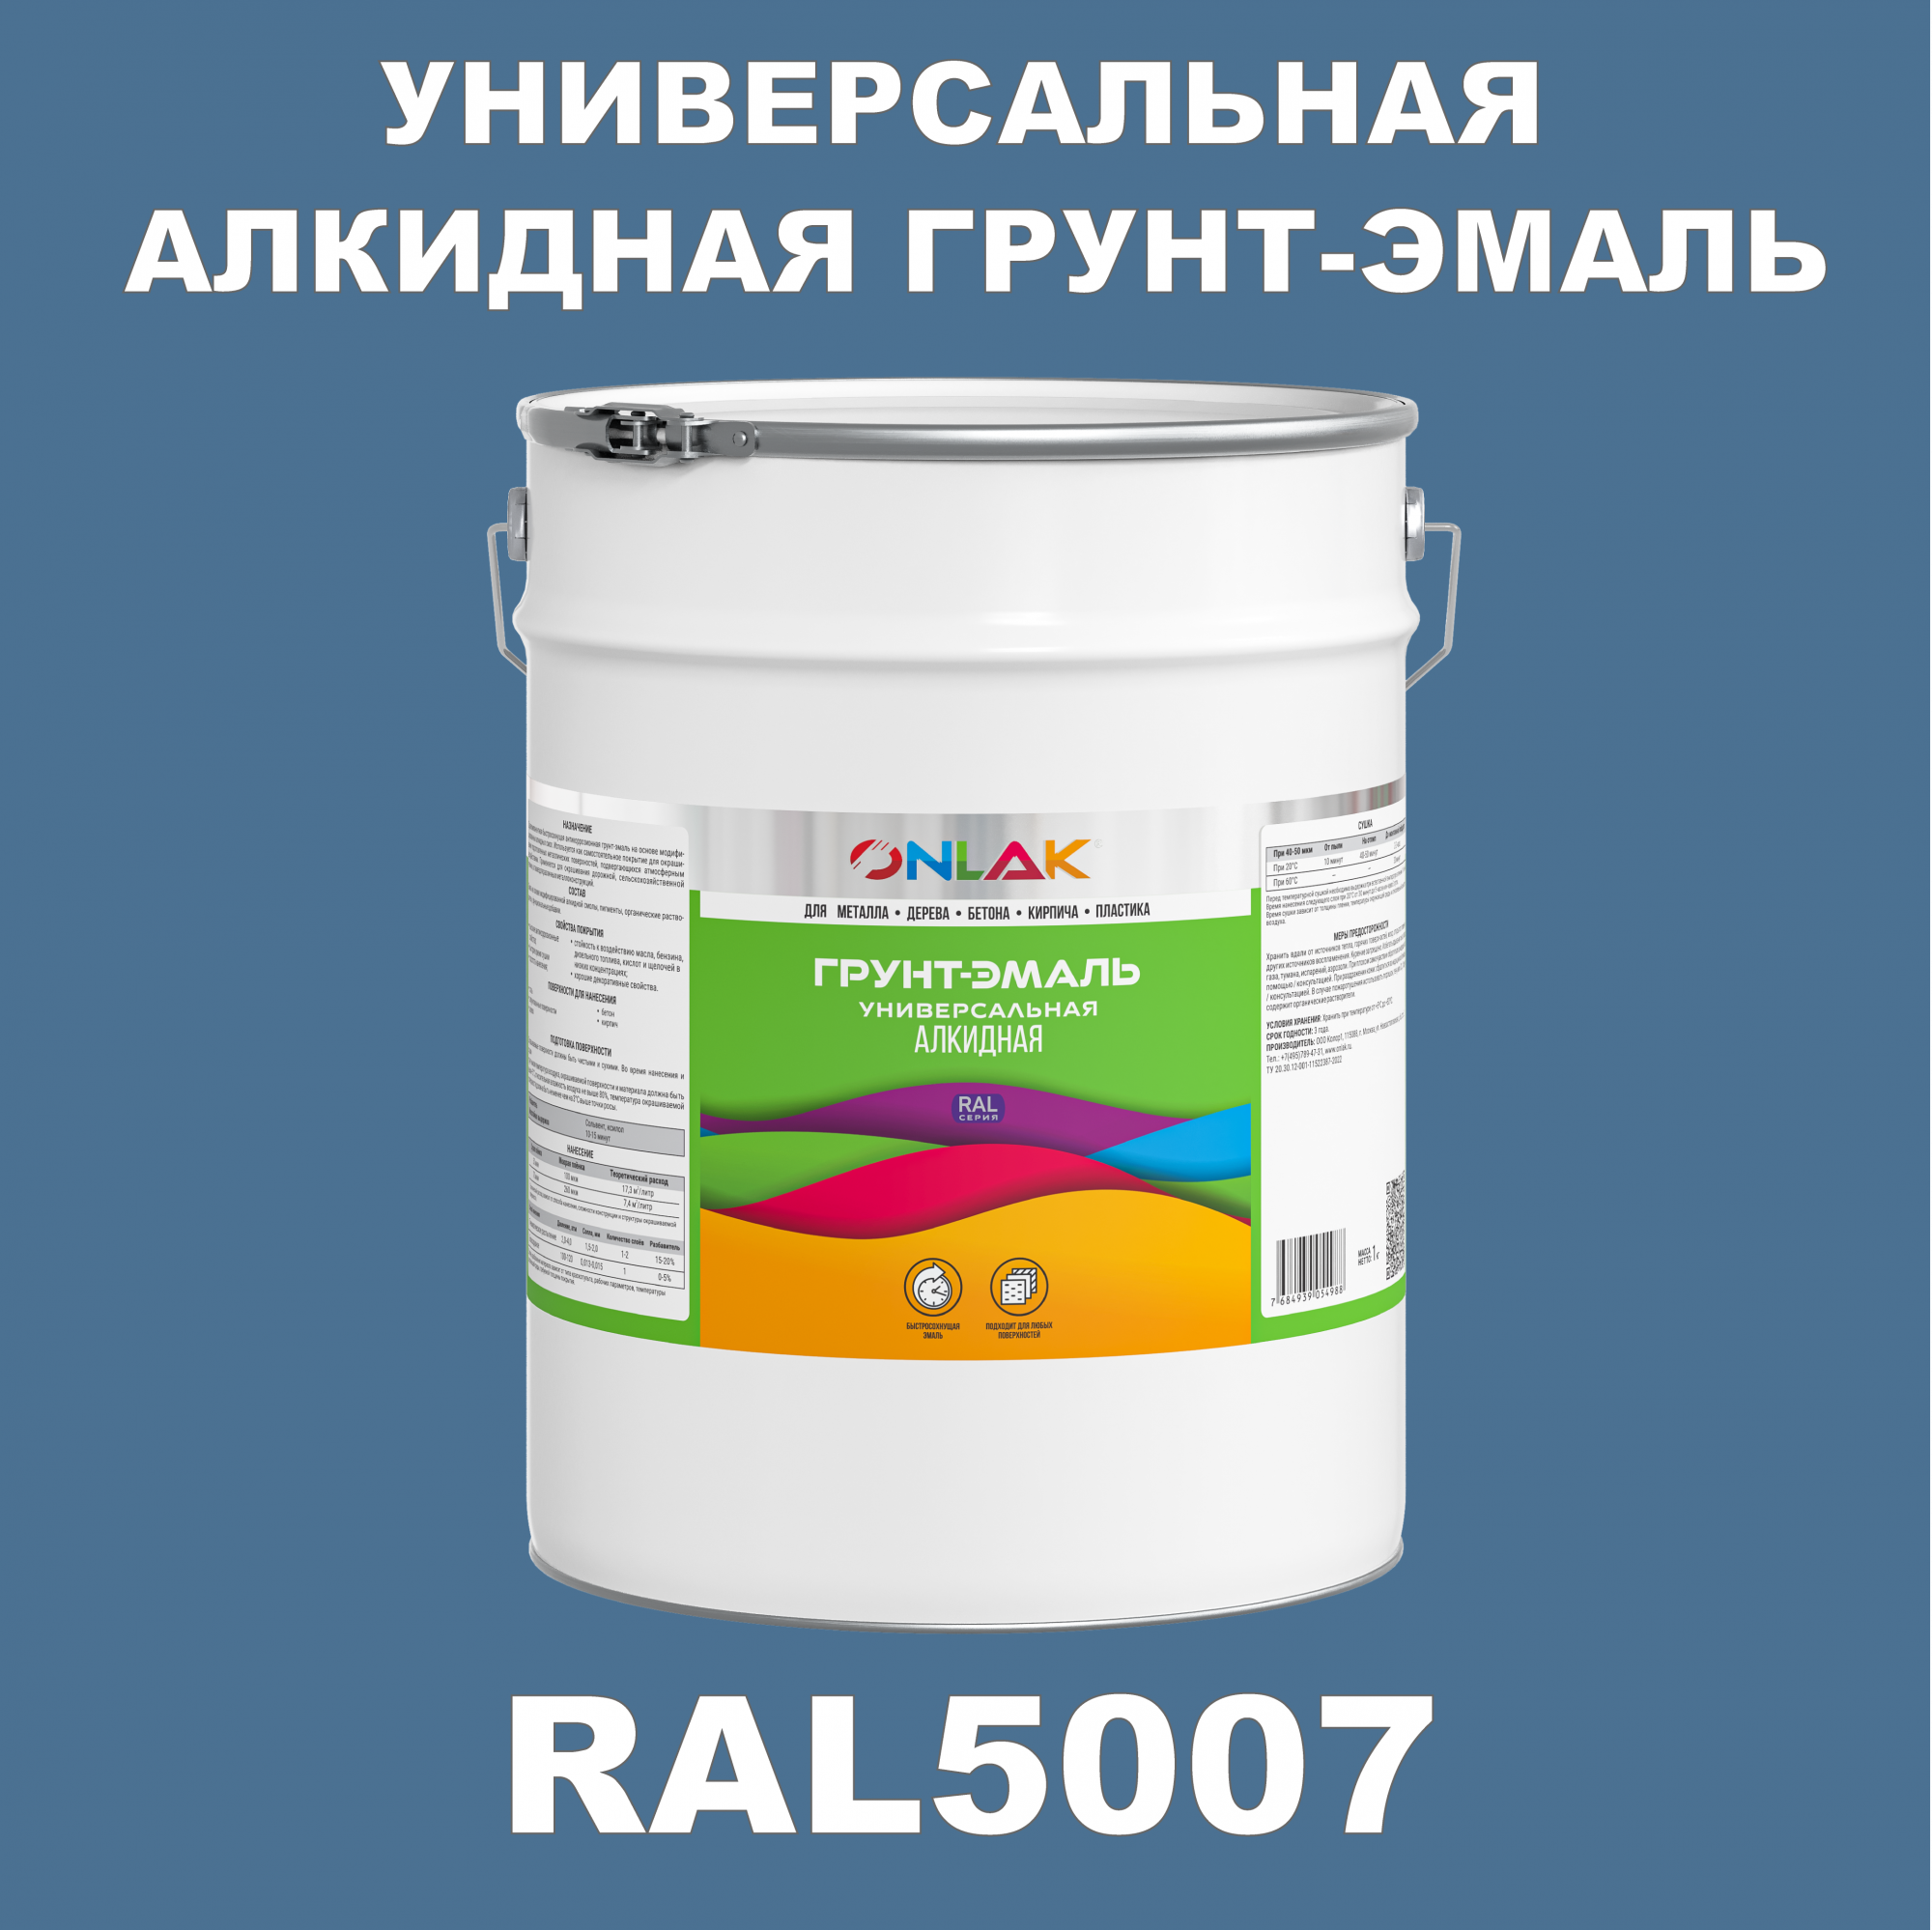 Грунт-эмаль ONLAK 1К RAL5007 антикоррозионная алкидная по металлу по ржавчине 20 кг грунт эмаль престиж по ржавчине алкидная зеленая 1 9 кг